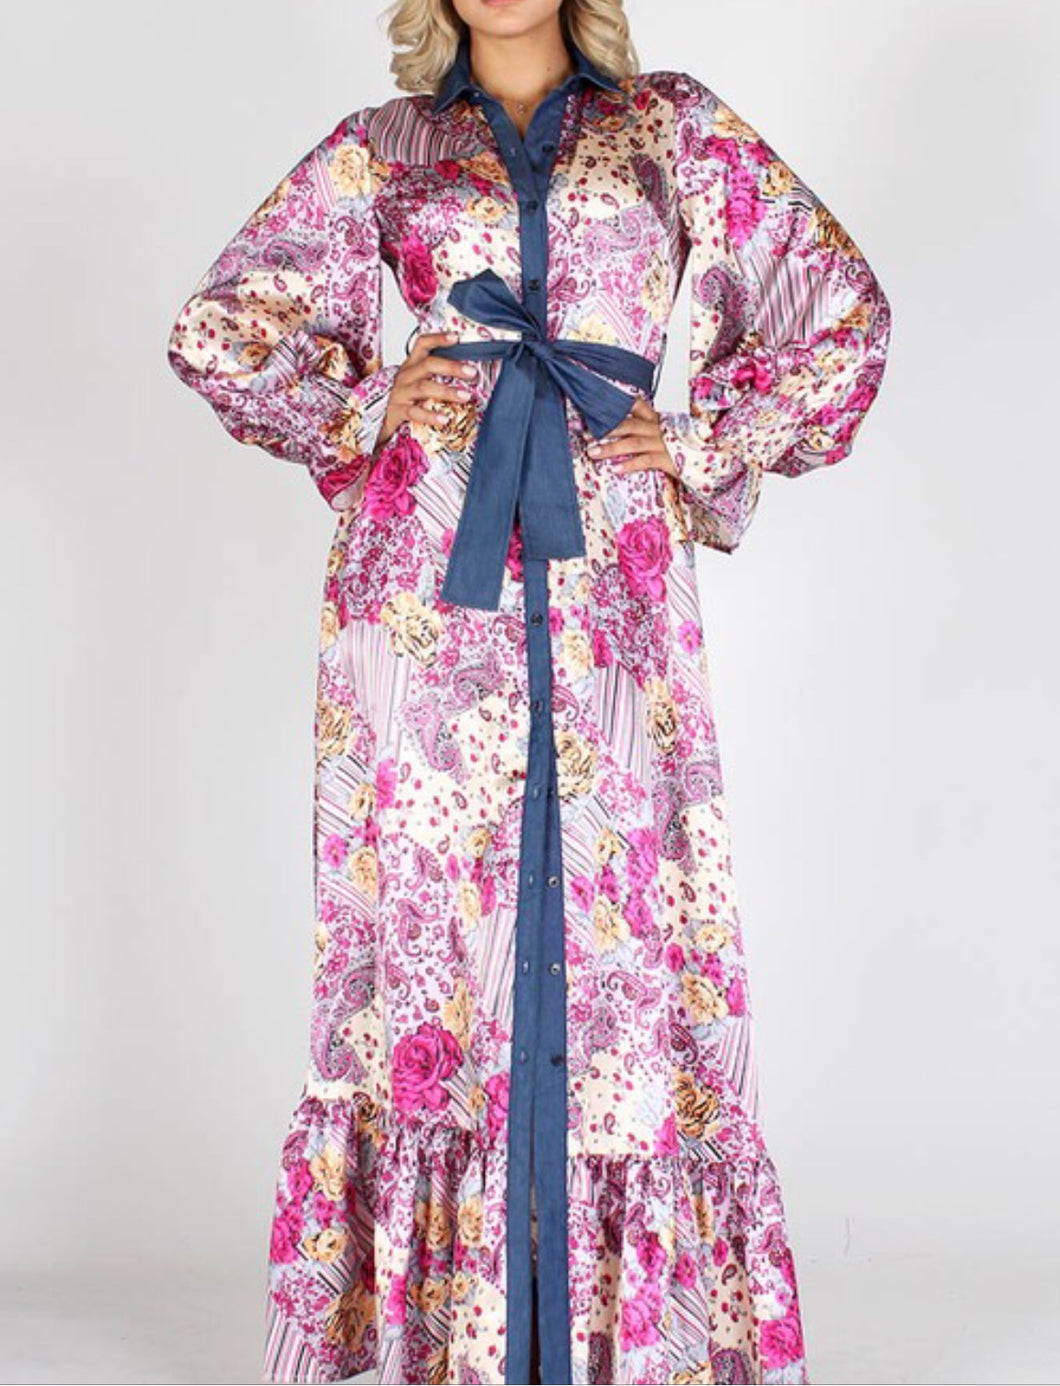 Statement floral maxi dress